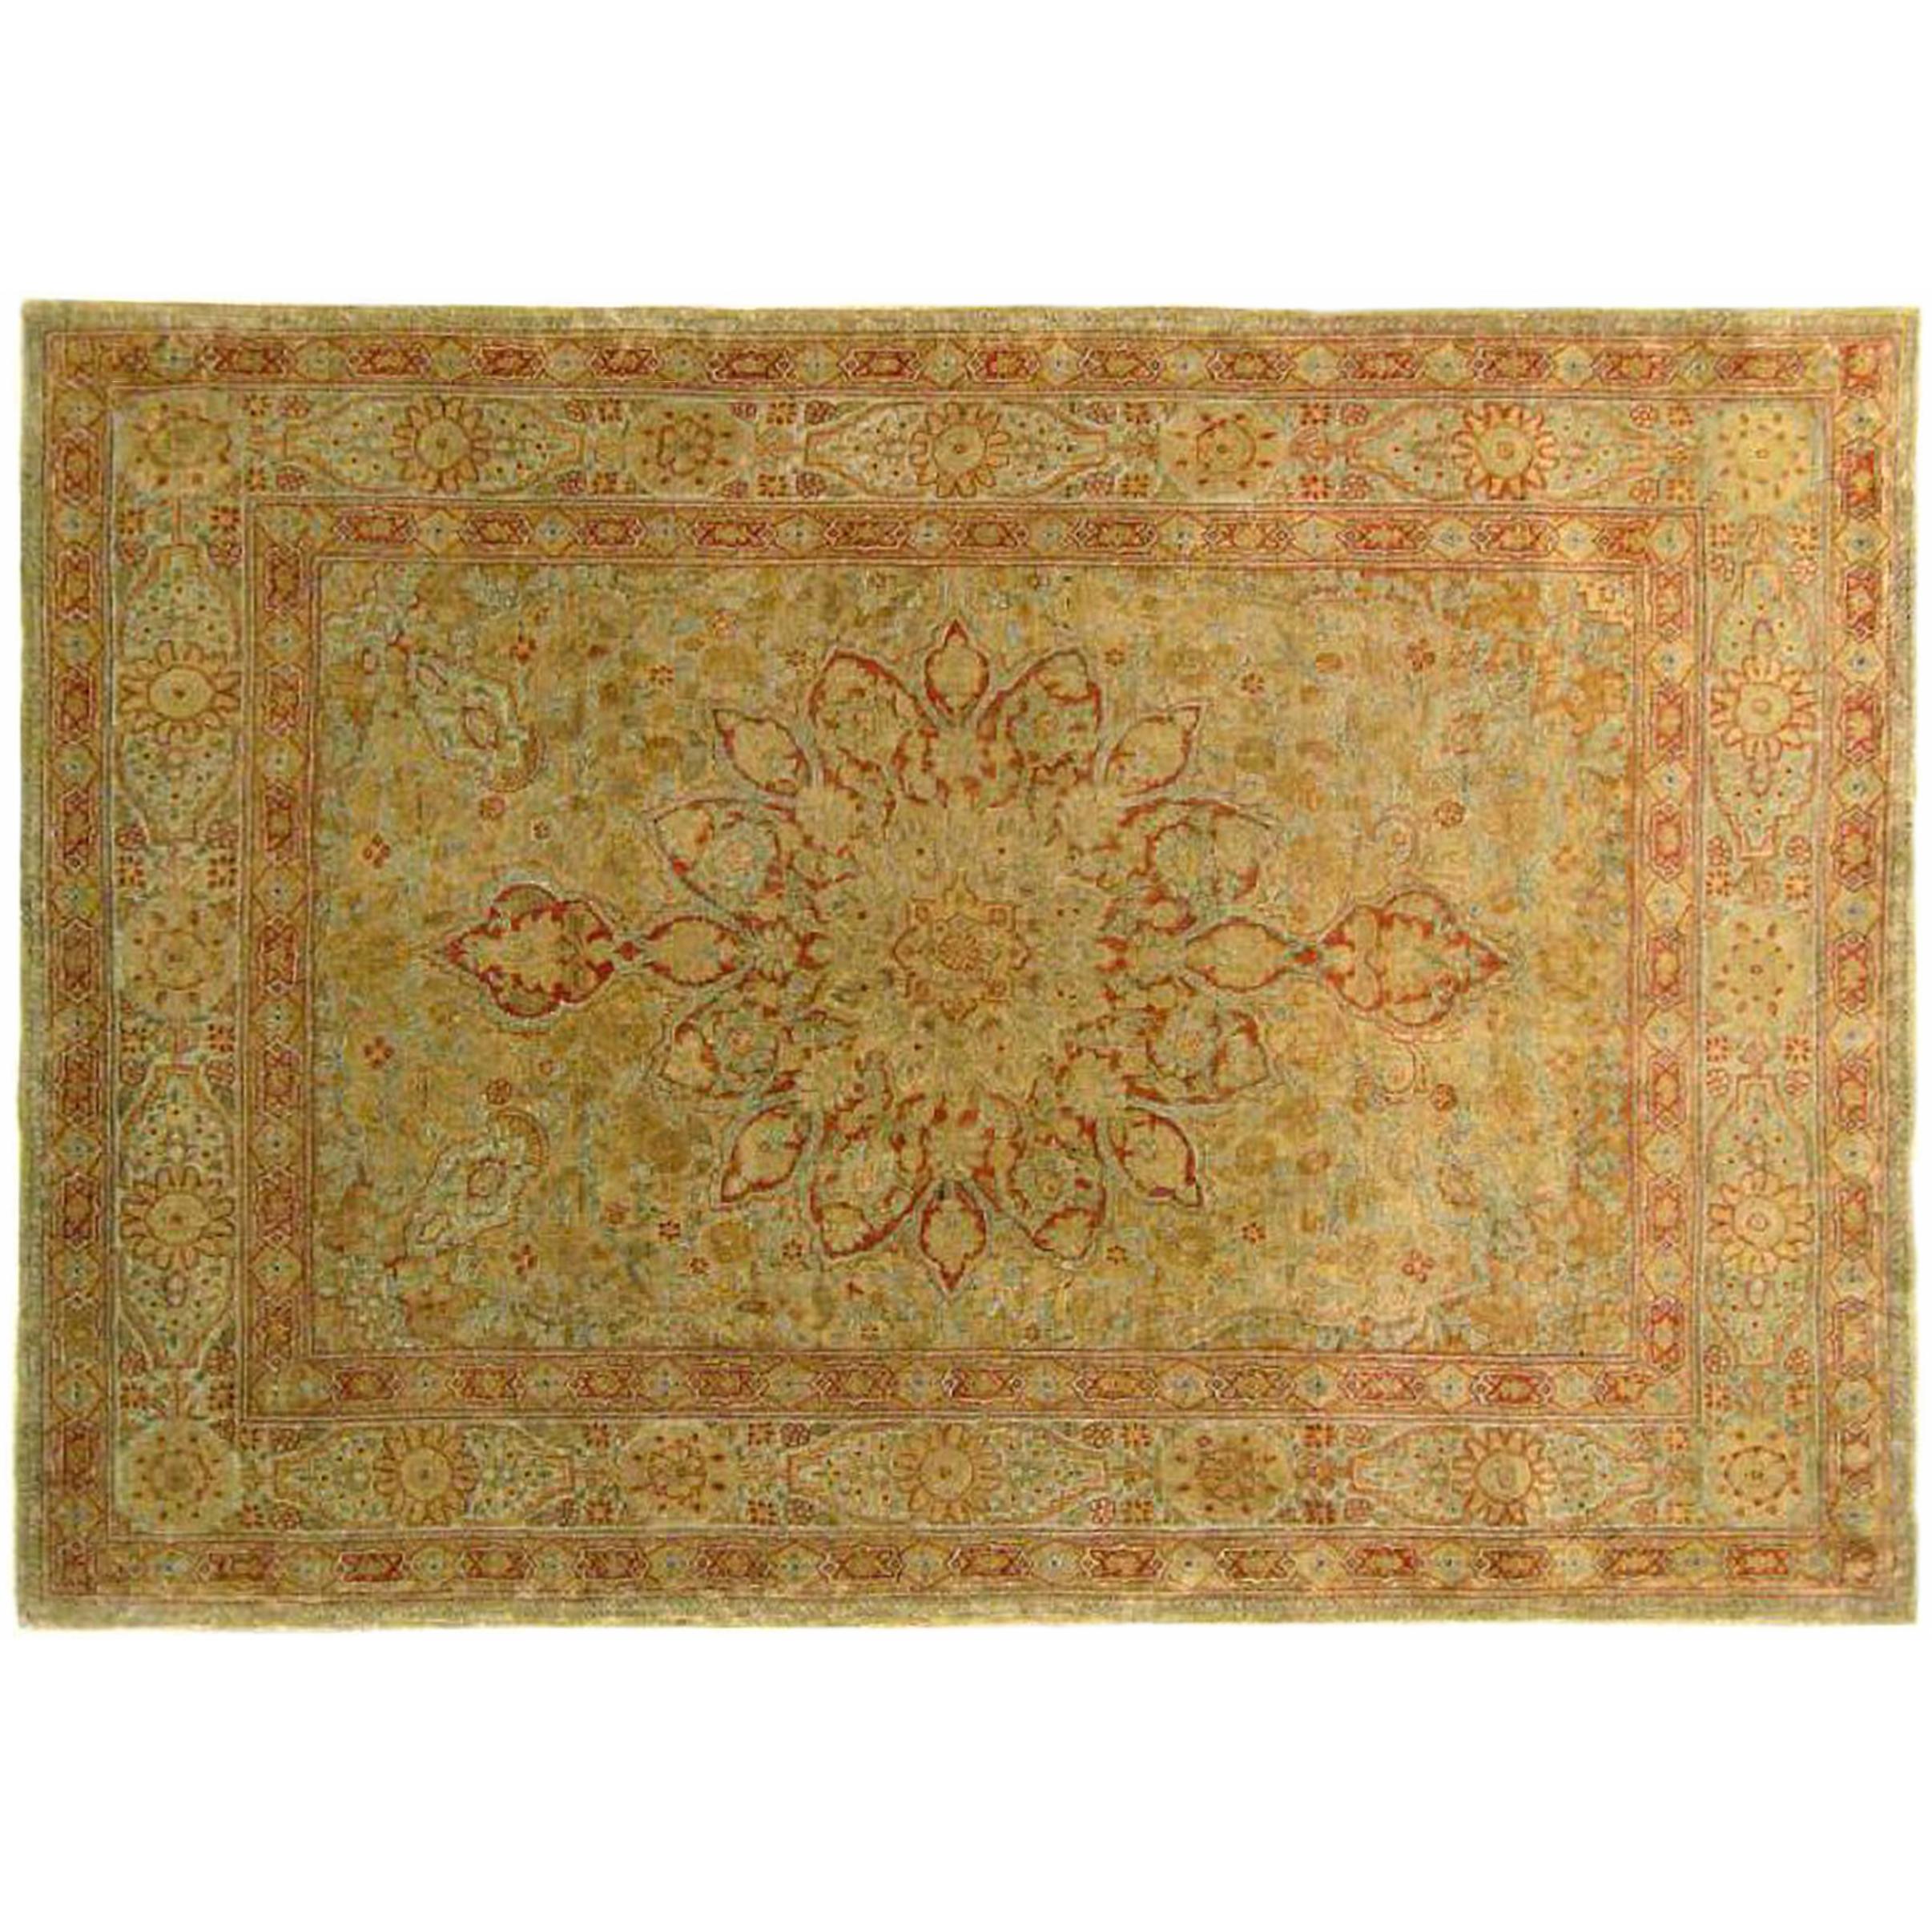 Antiker persischer Täbris- Orientteppich in Kleingröße mit Medaillon und weichen Farben, antik